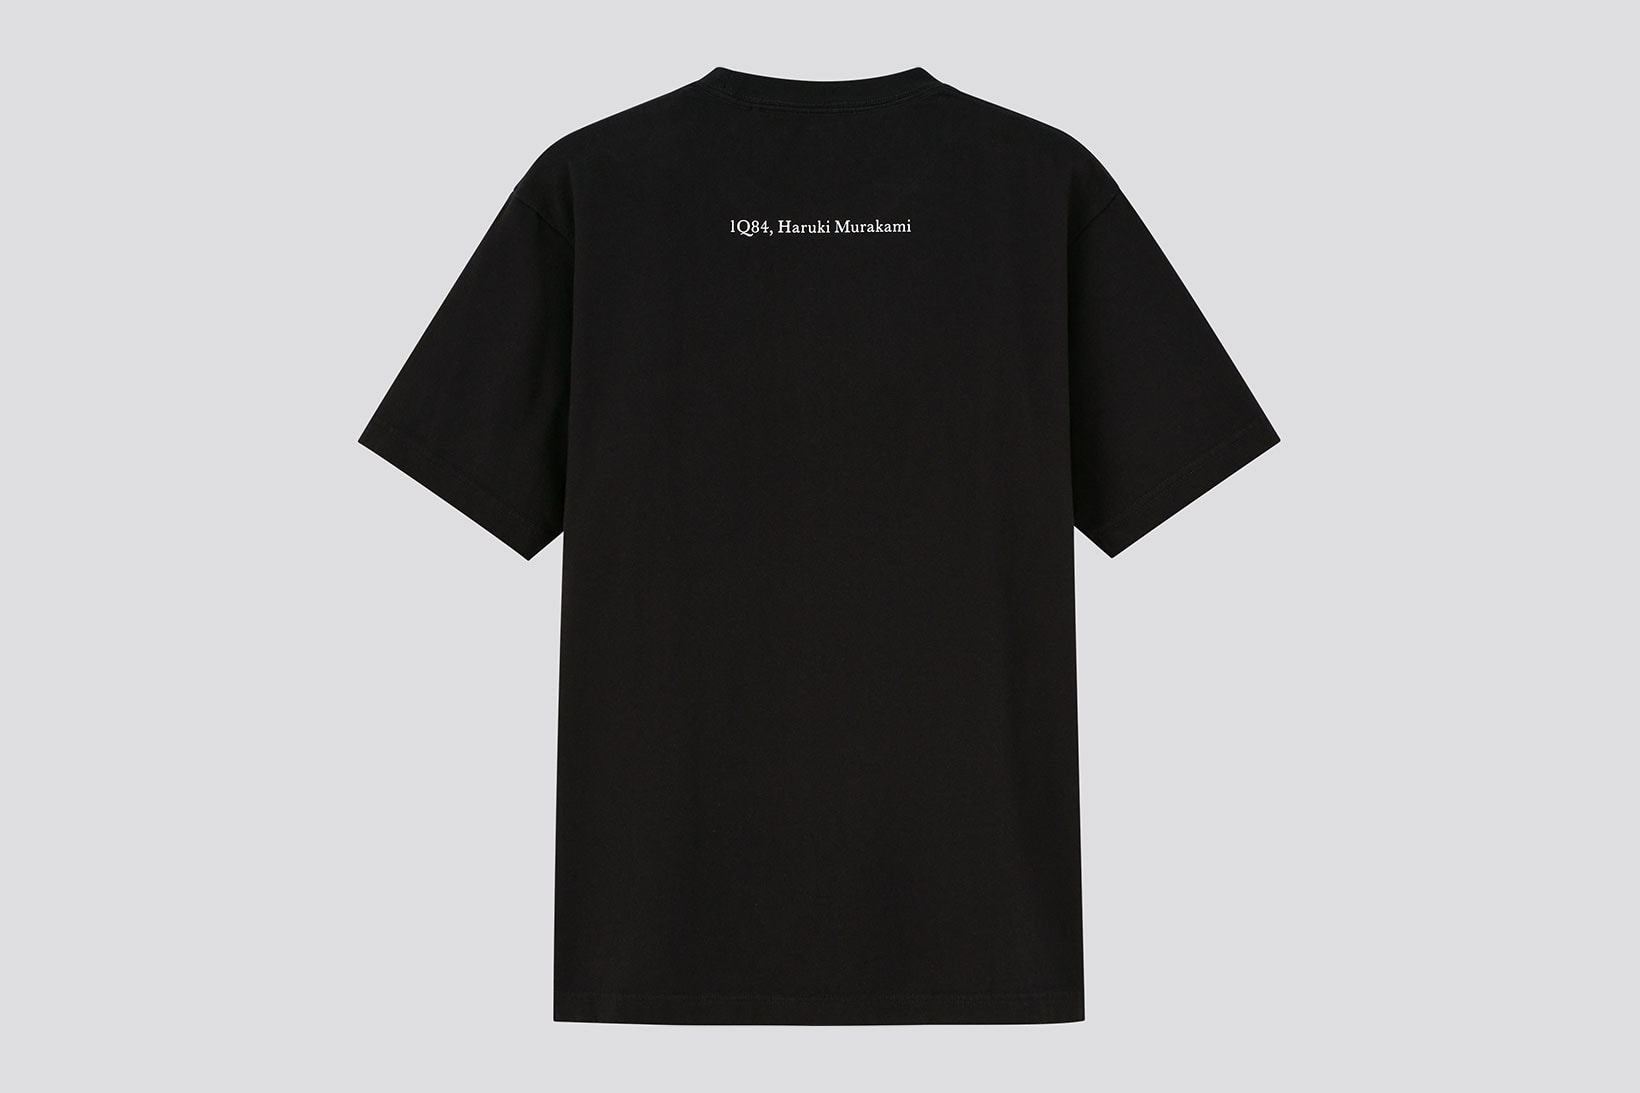 uniqlo ut haruki murakami author books collaboration t-shirt black iq84